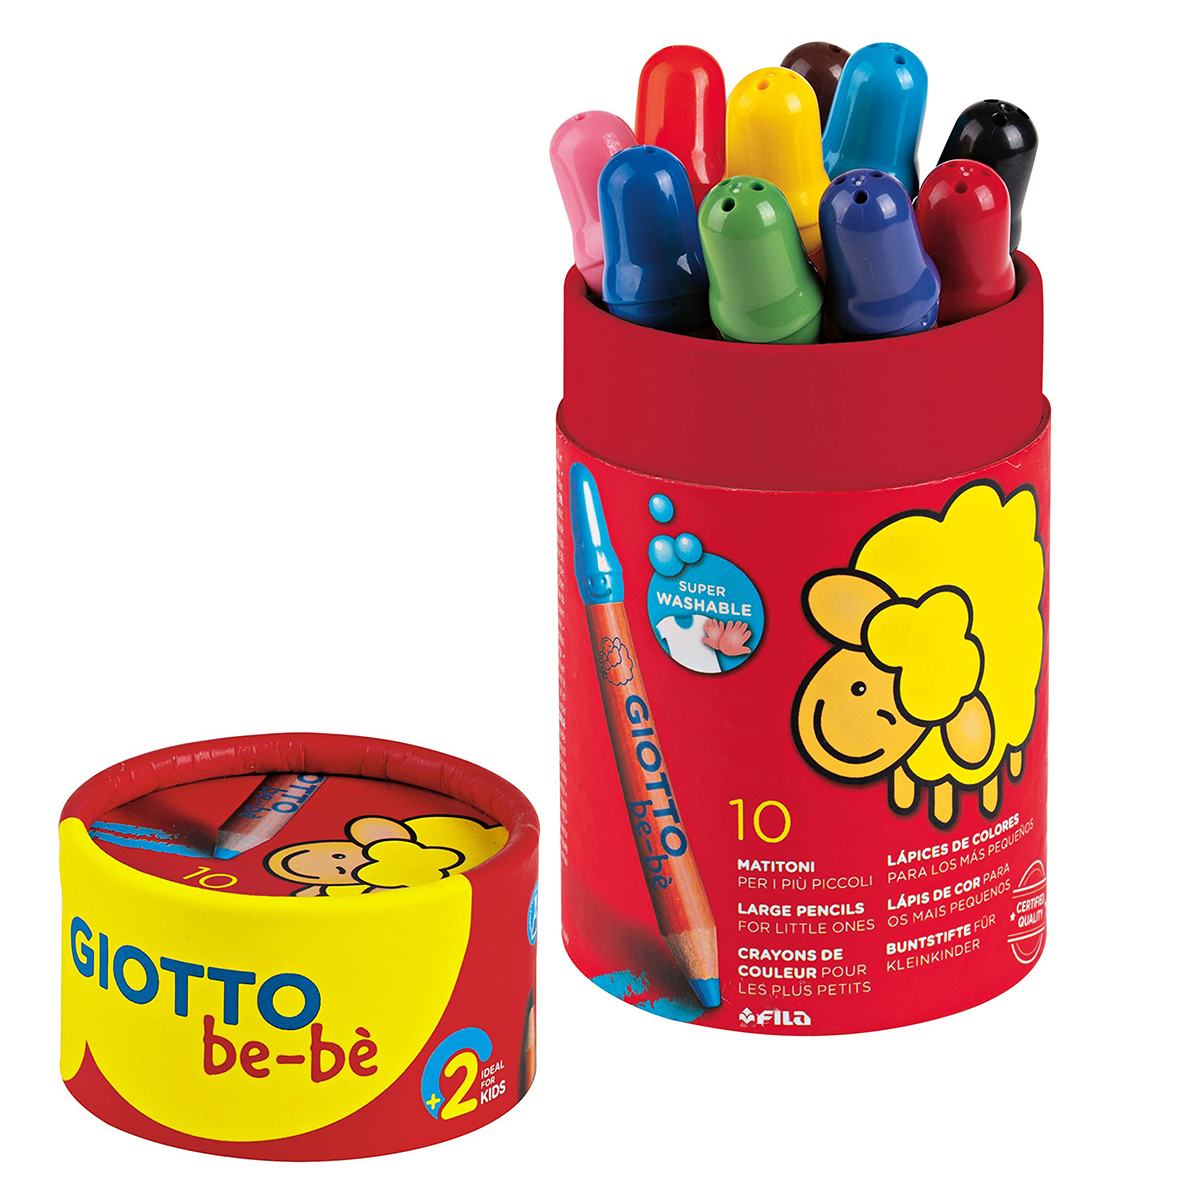 Giotto Be-bè Crayons de couleur - Lot de 10